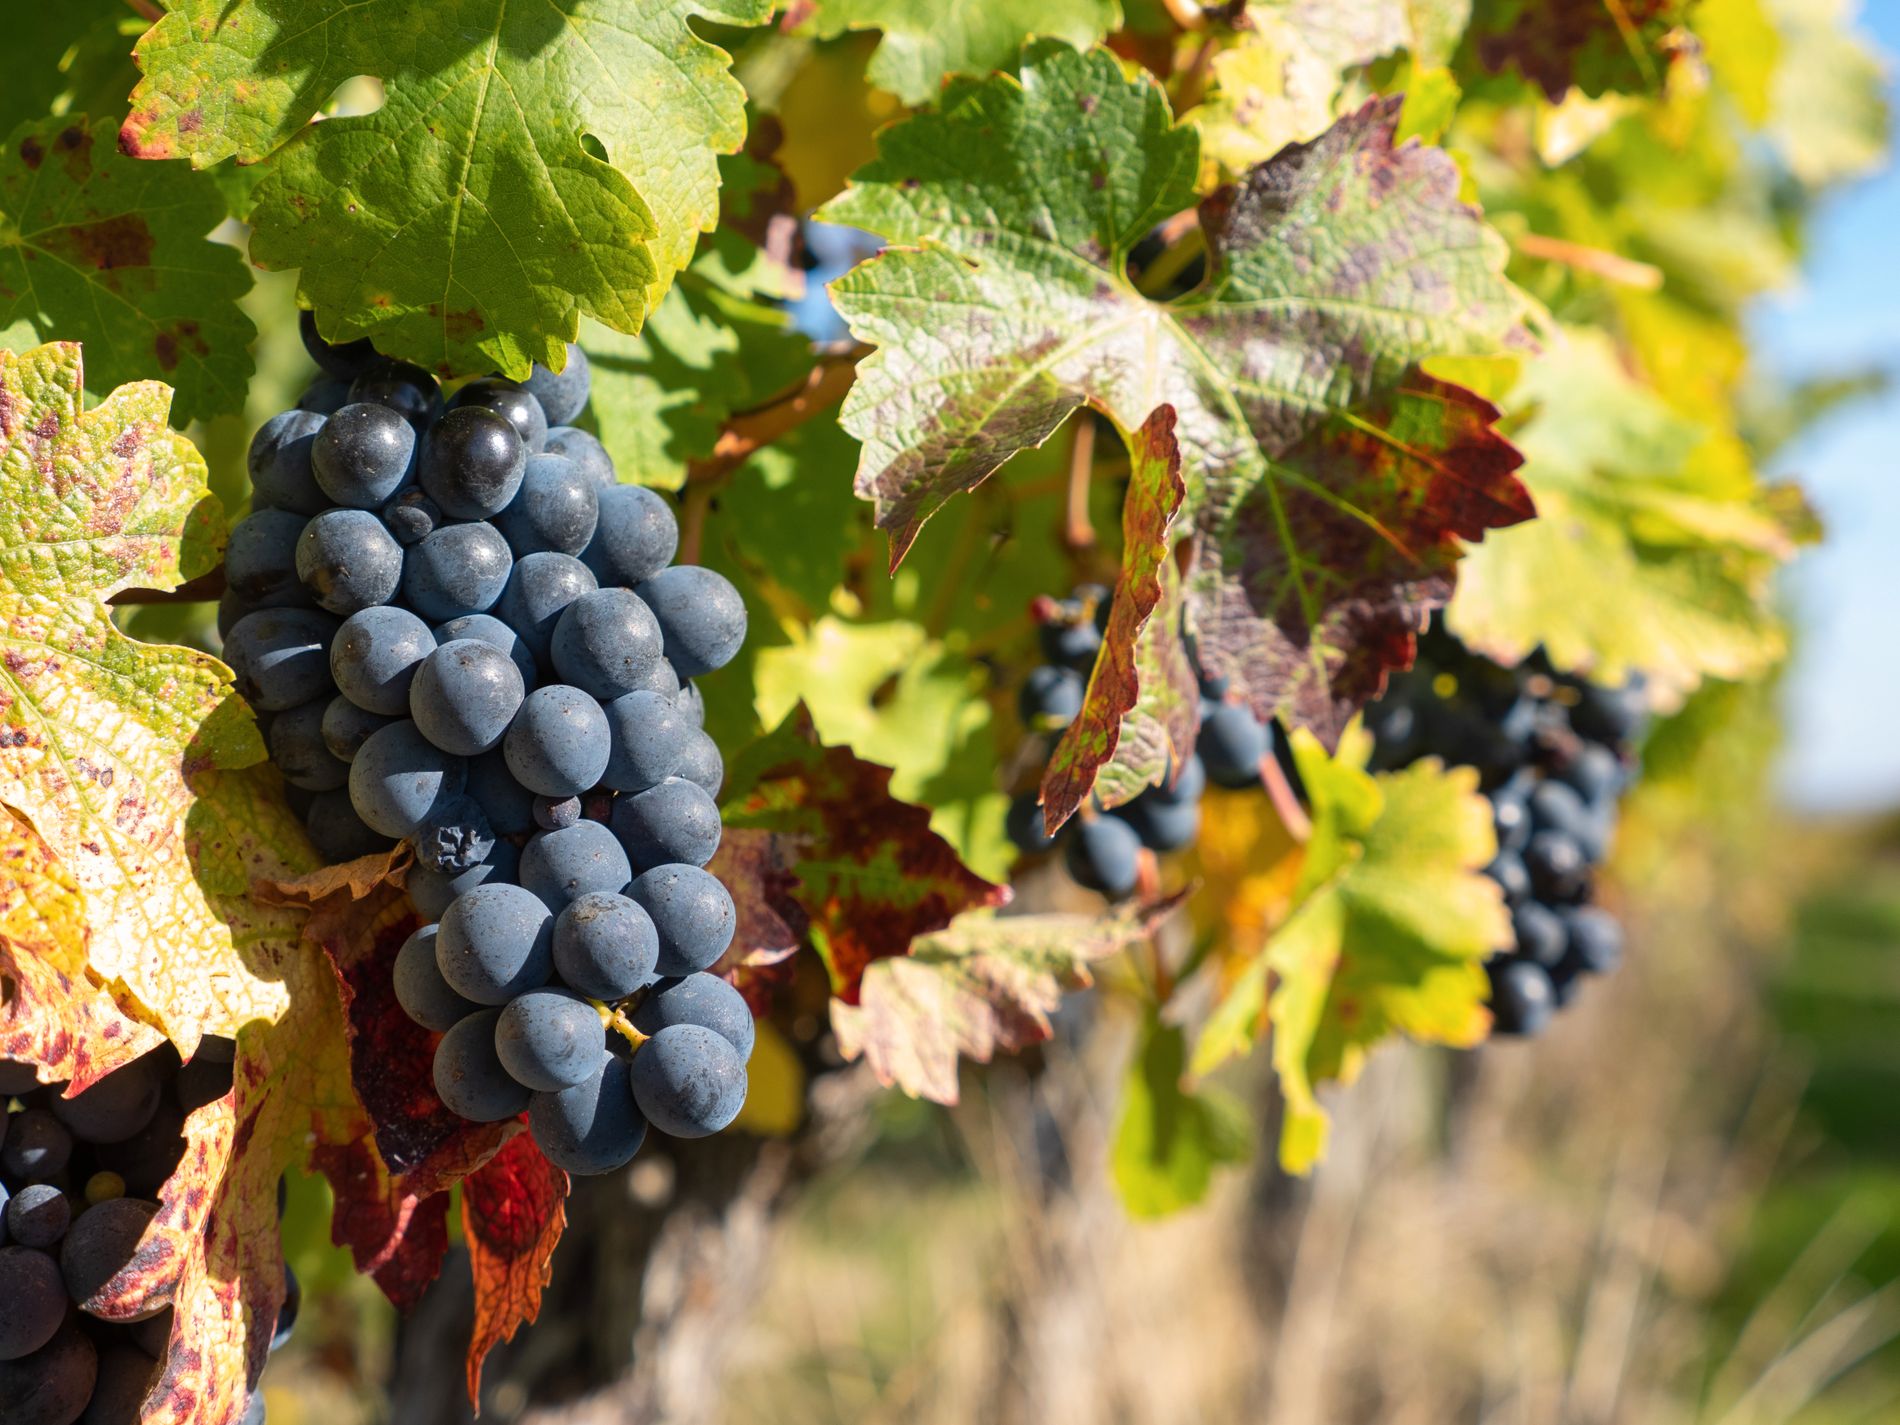 ”När jag och Mattias blir pensionärer kanske vi flyttar till Sydeuropa och producerar viner för att det är kul”, säger Jill.